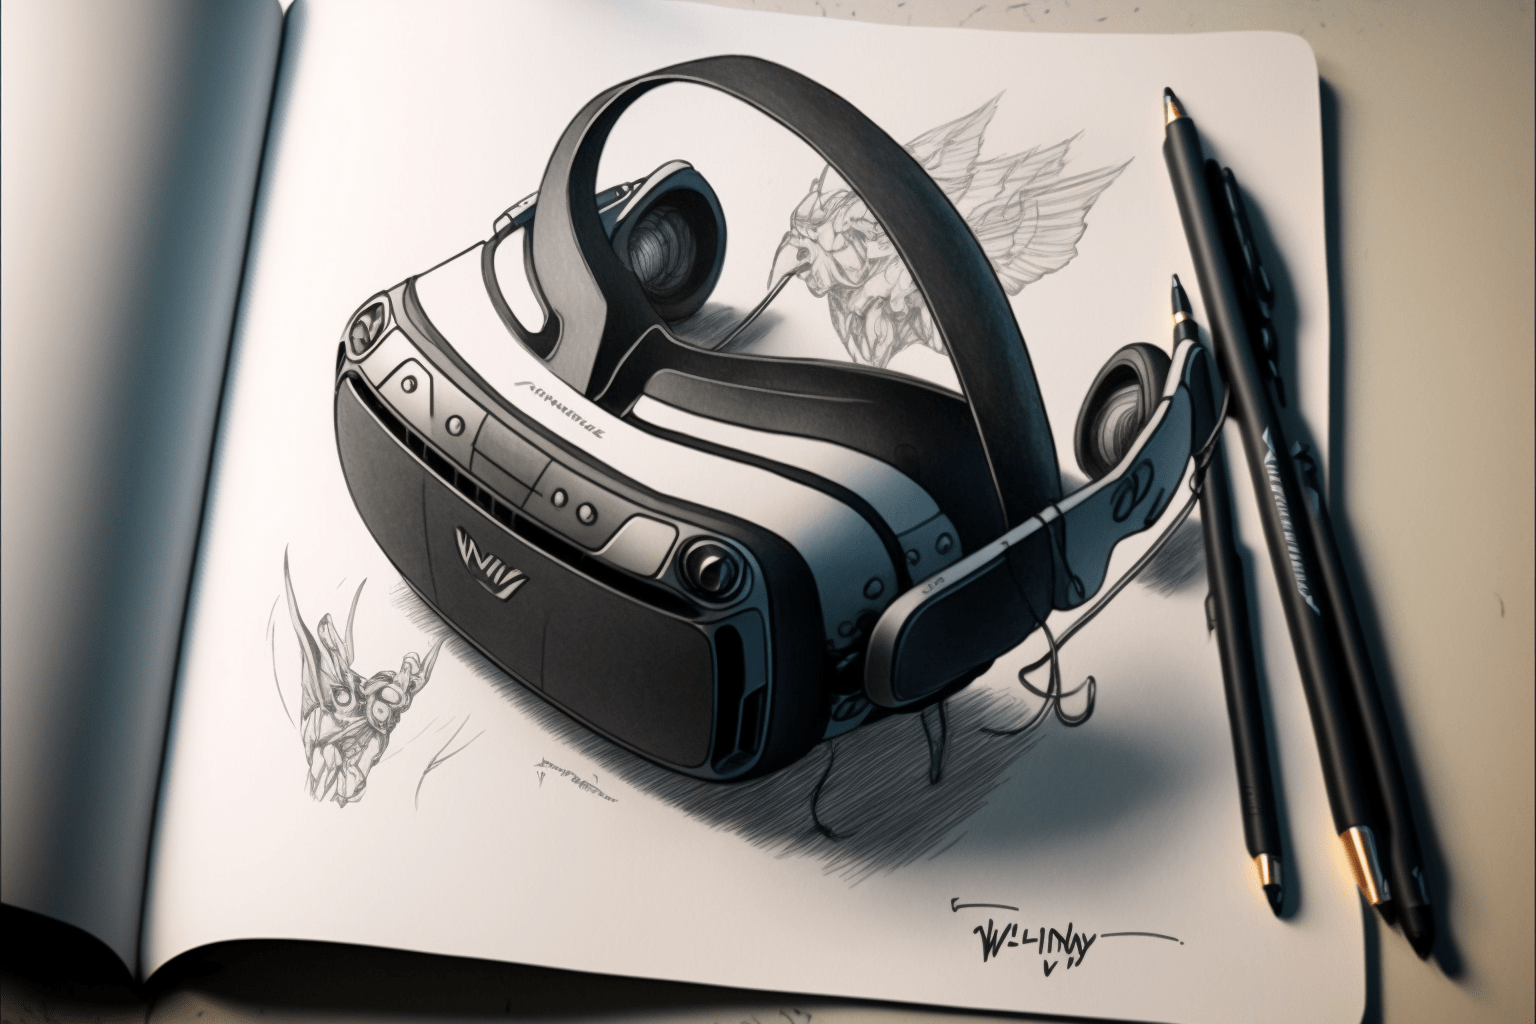 Valves nächste VR-Brille: Weshalb mich Deckard kalt lässt